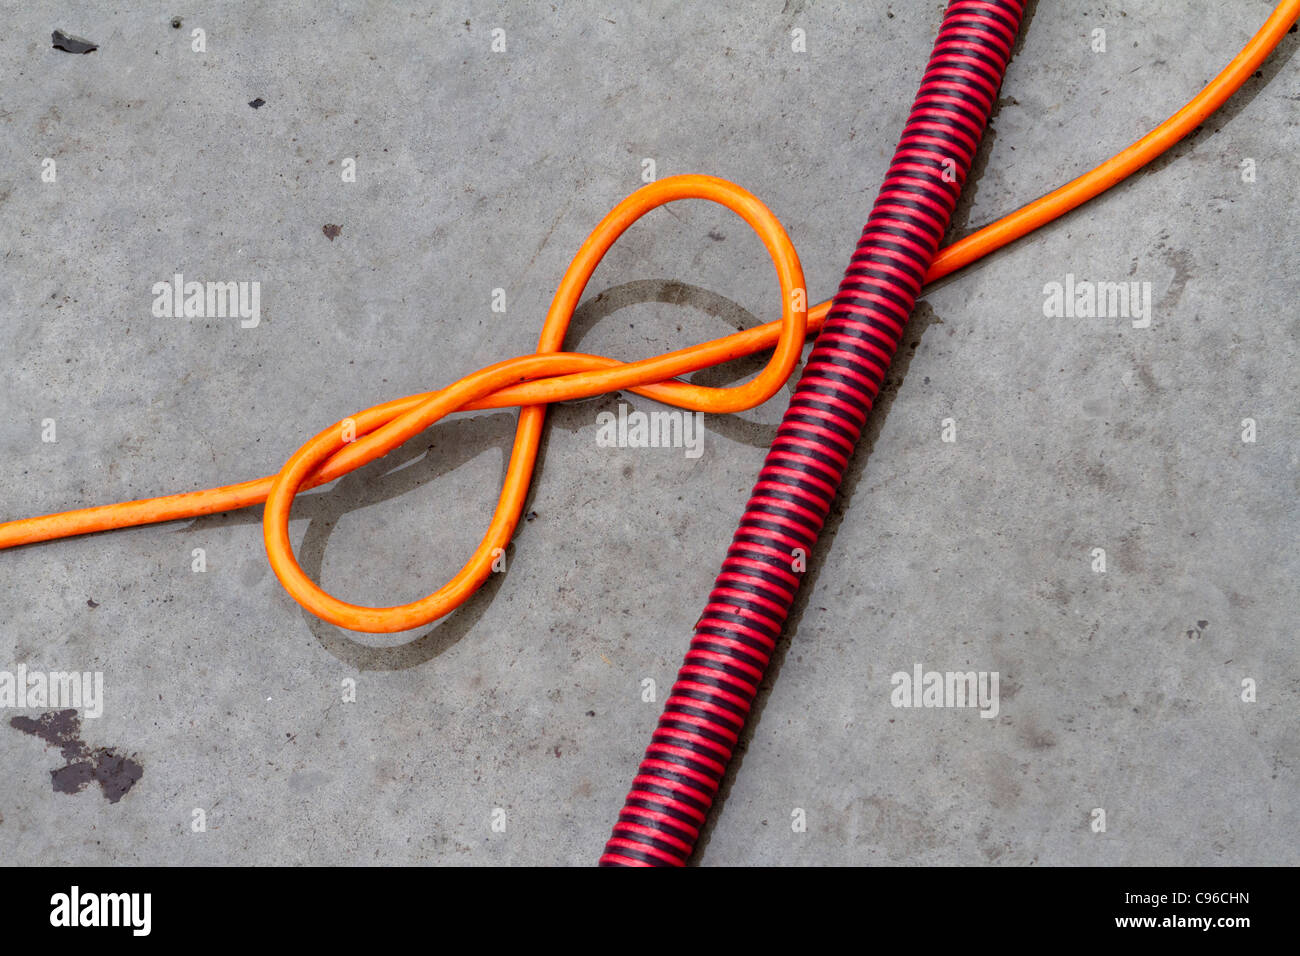 Une orange electric flex avec un noeud en elle traversé par un à rayures rouge et noir ou un conduit flexible en plastique Banque D'Images